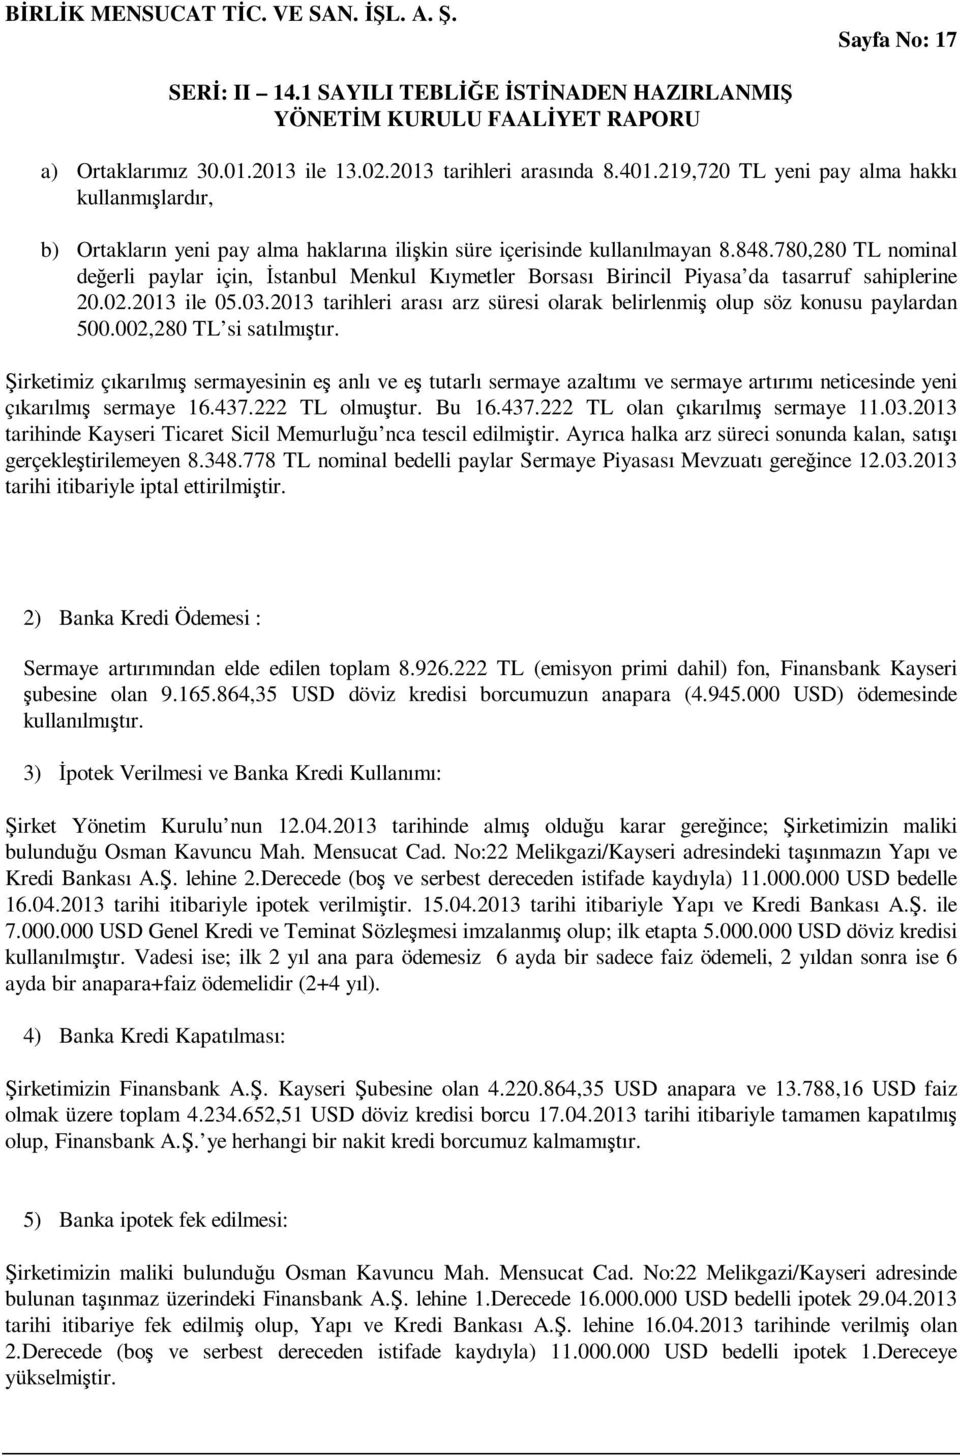 780,280 TL nominal değerli paylar için, Đstanbul Menkul Kıymetler Borsası Birincil Piyasa da tasarruf sahiplerine 20.02.2013 ile 05.03.